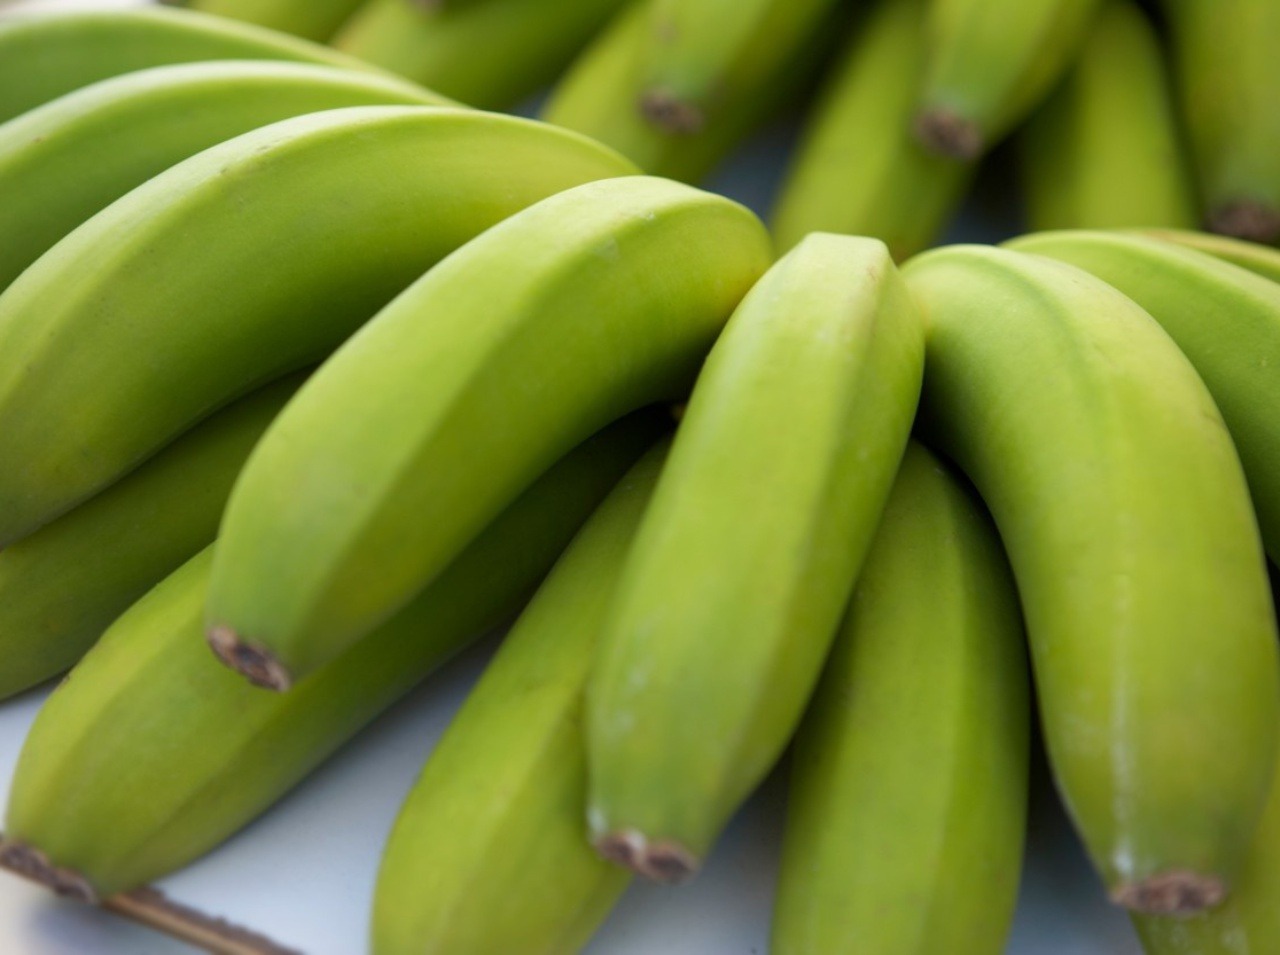 Nezabúdajte aj na zelené banány, ktoré obsahujú zdraviu prospešný rezistentný škrob.